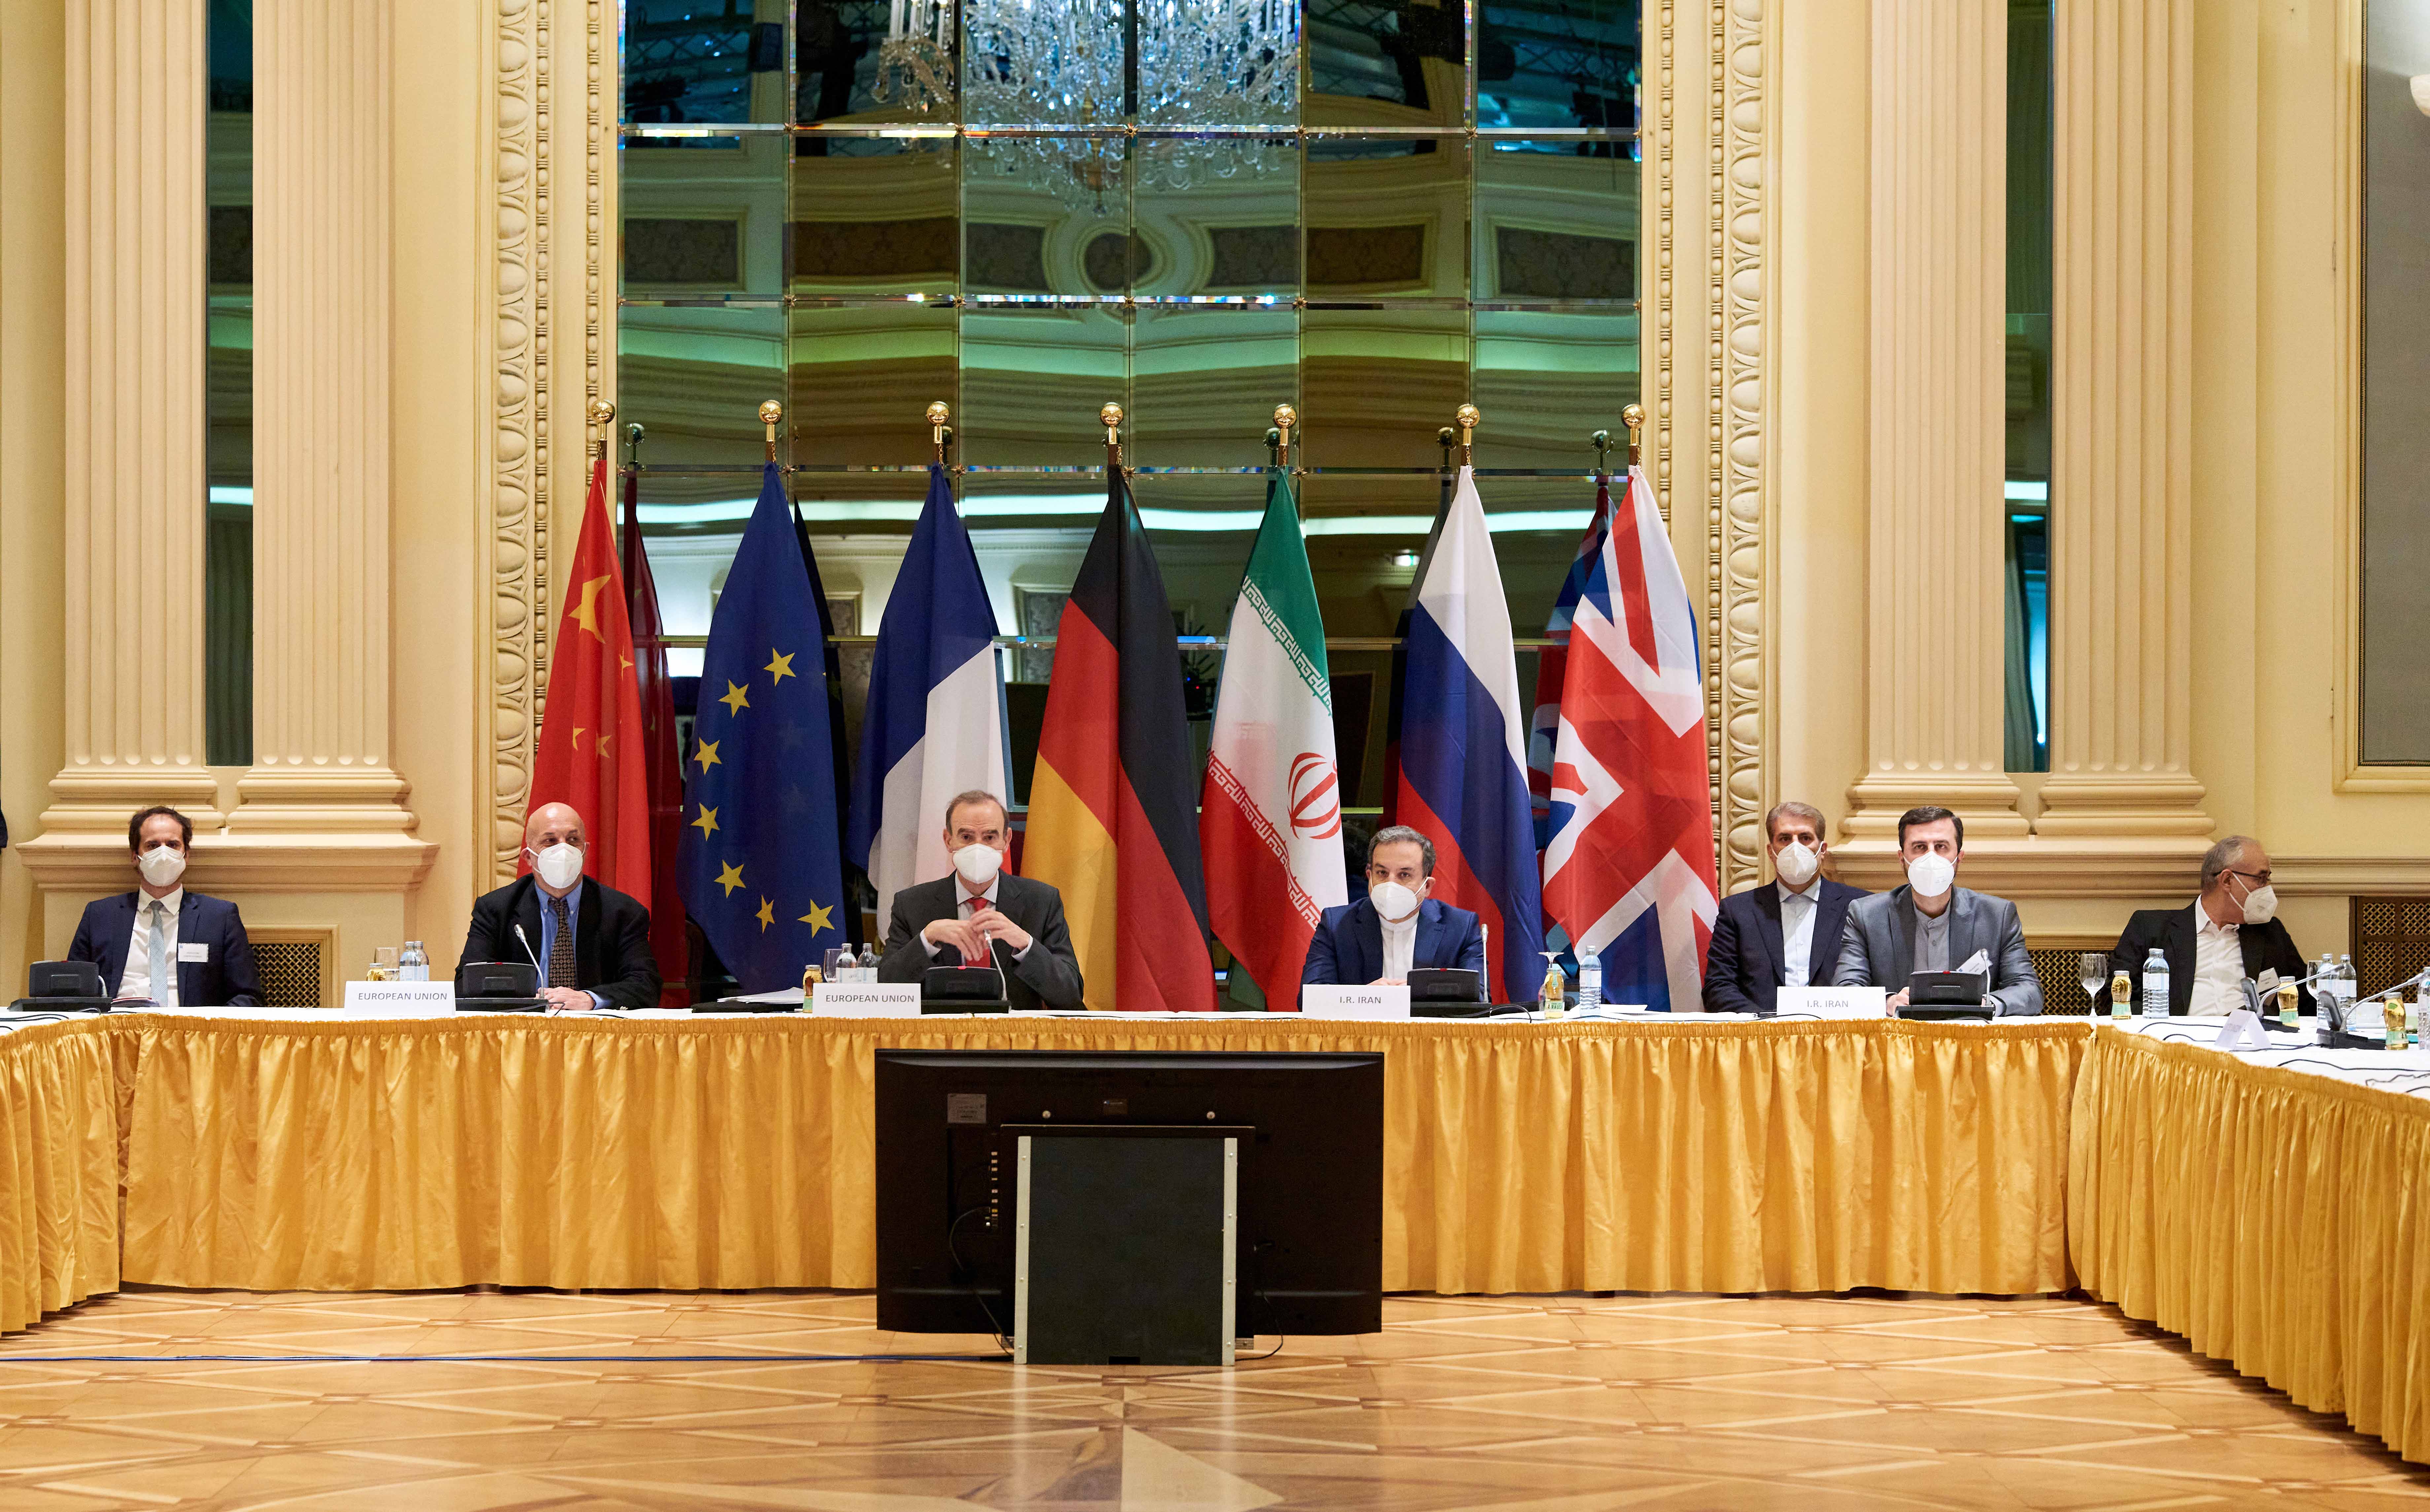 Ядерные конвенции. Переговоры в Вене. Переговоры в Вене по иранской ядерной программе. Россия и иранская ядерная сделка. Дипломатические переговоры.